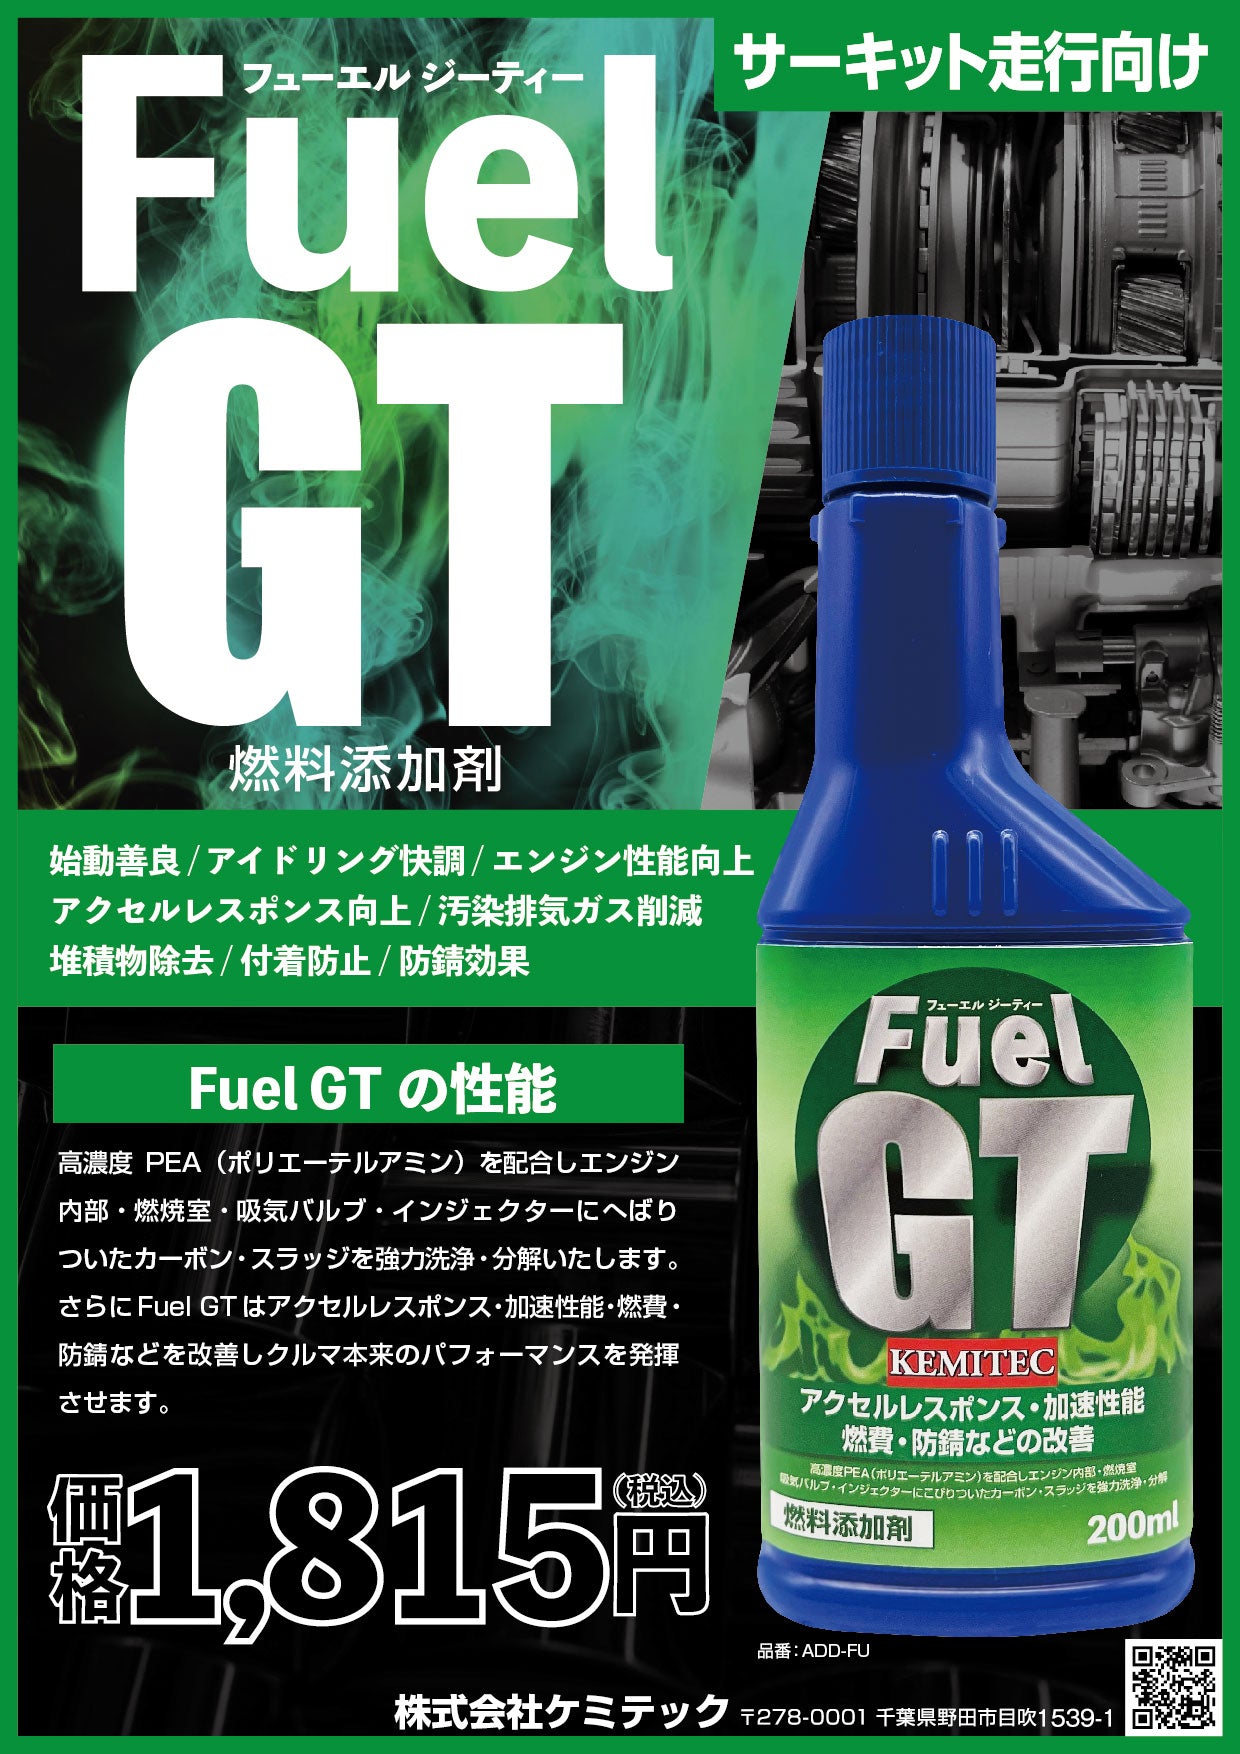 Fuel GT